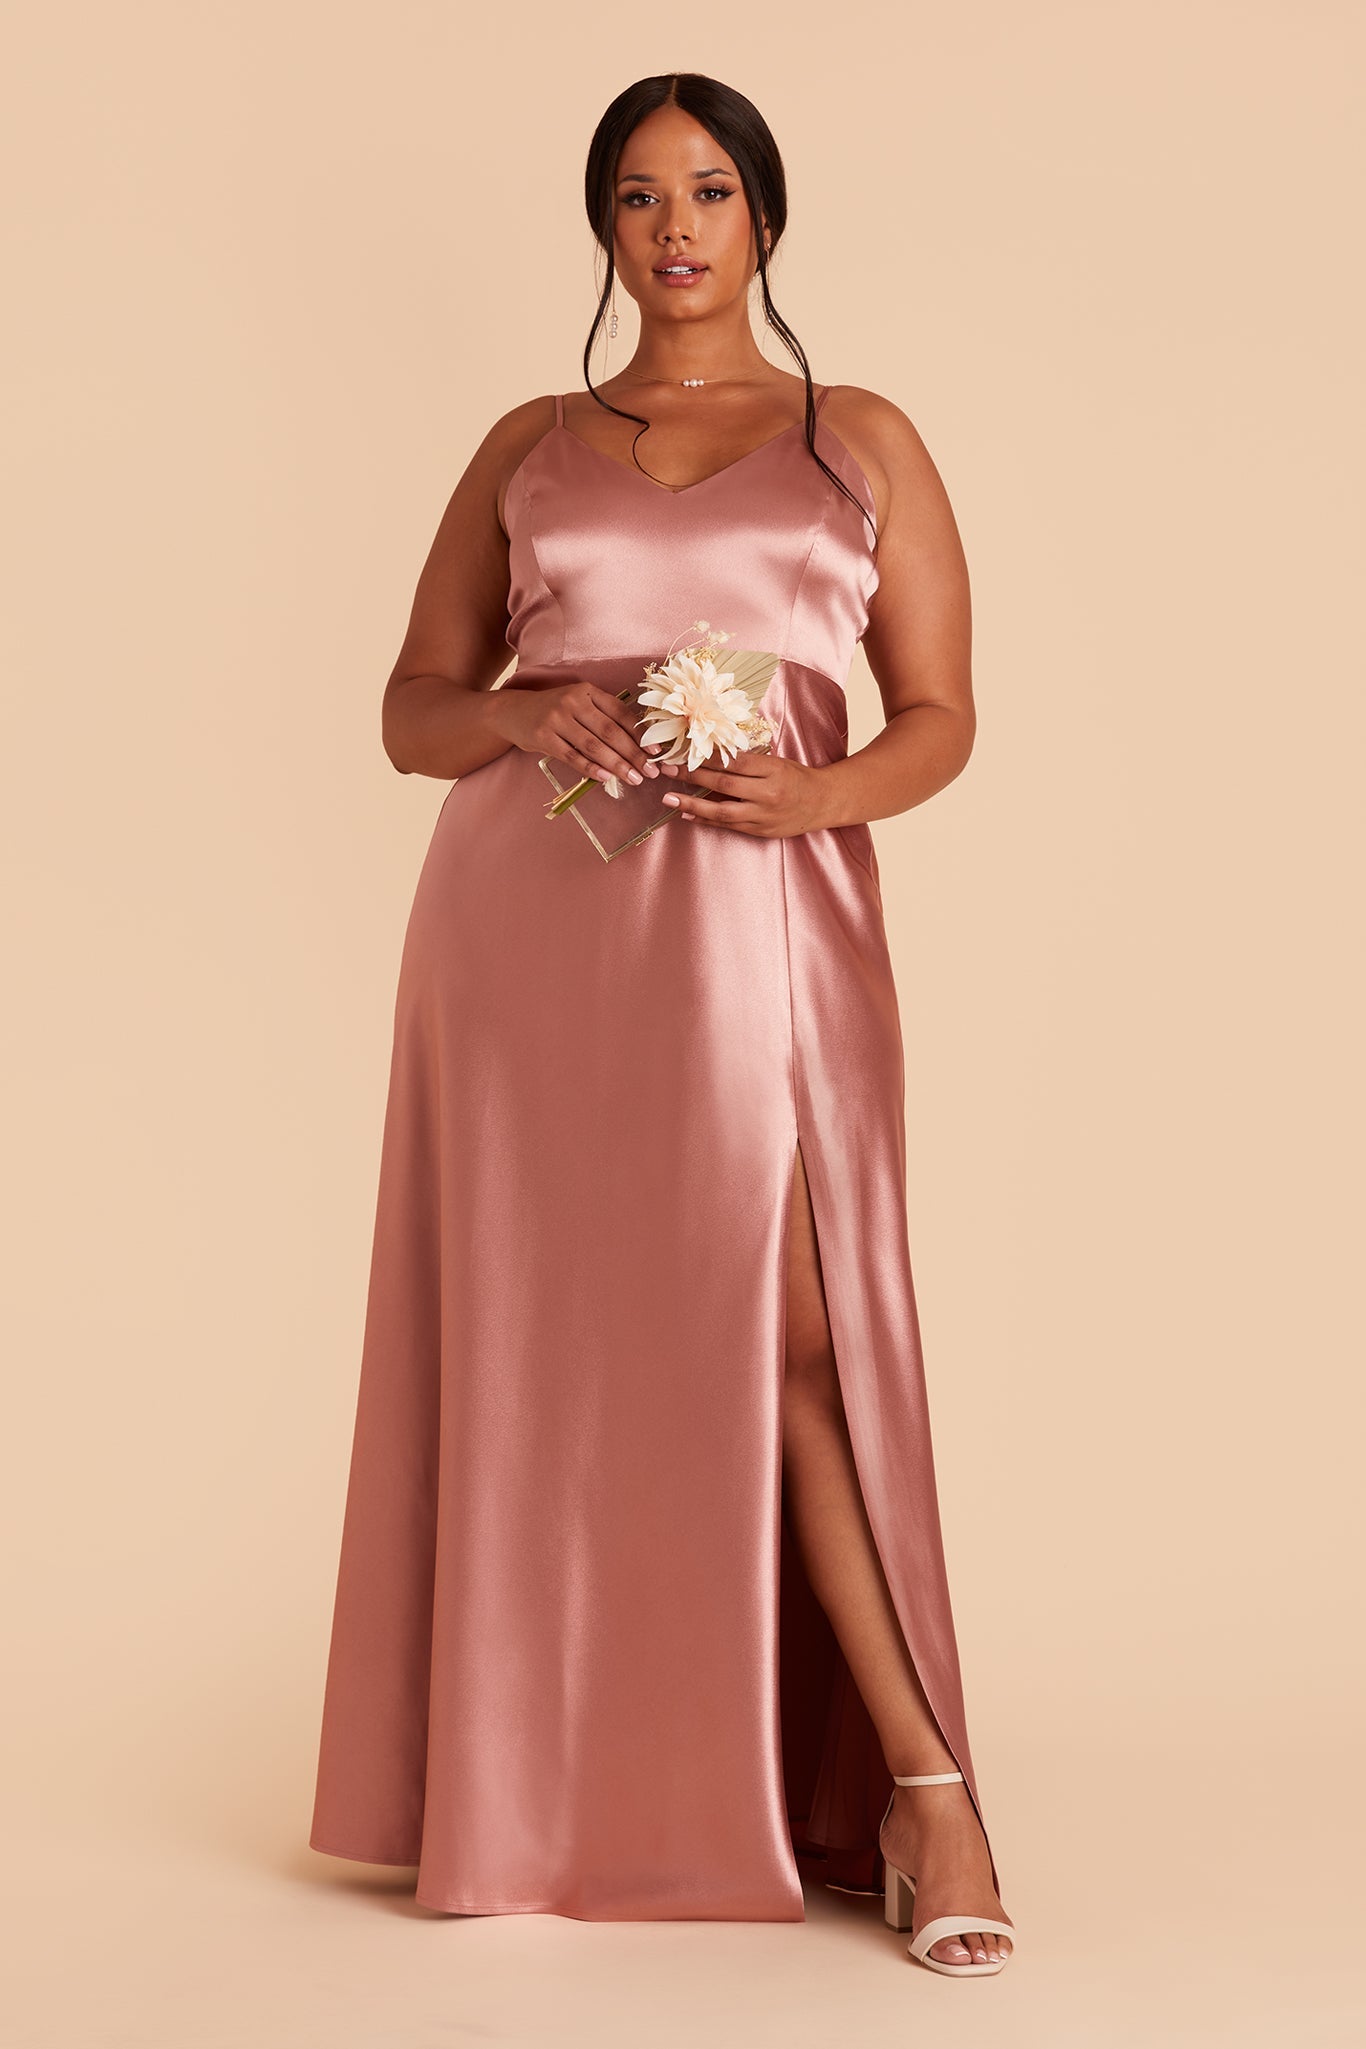 Jay Satin Dress - Desert Rose